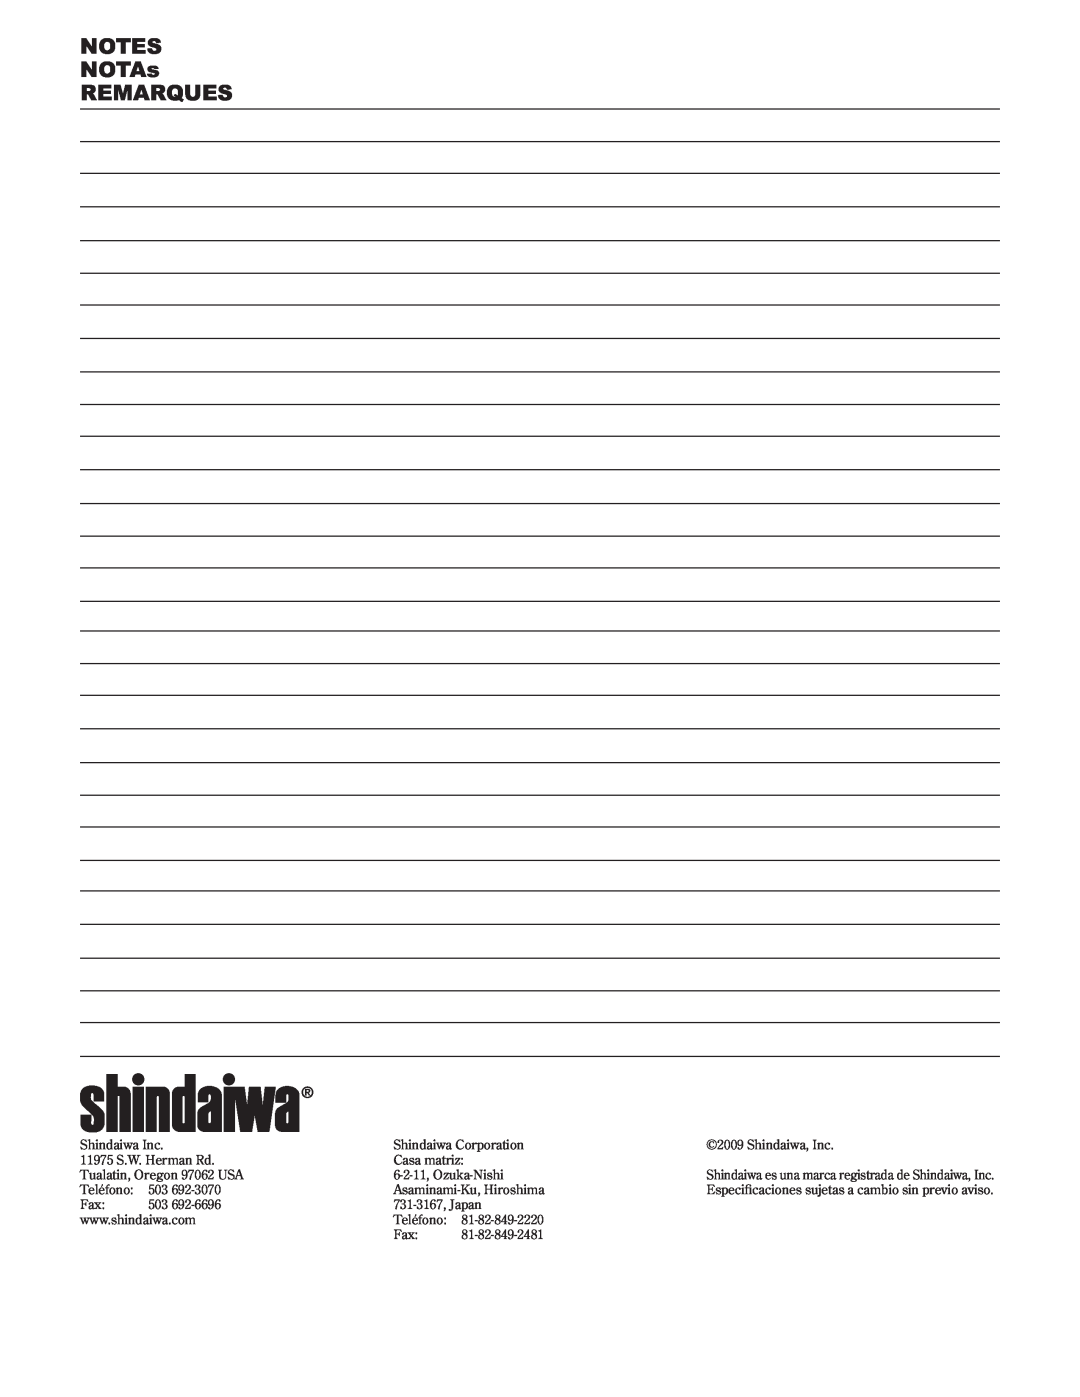 Shindaiwa 89302, C242/EVC manual NOTAs REMARQUES, Shindaiwa es una marca registrada de Shindaiwa, Inc 